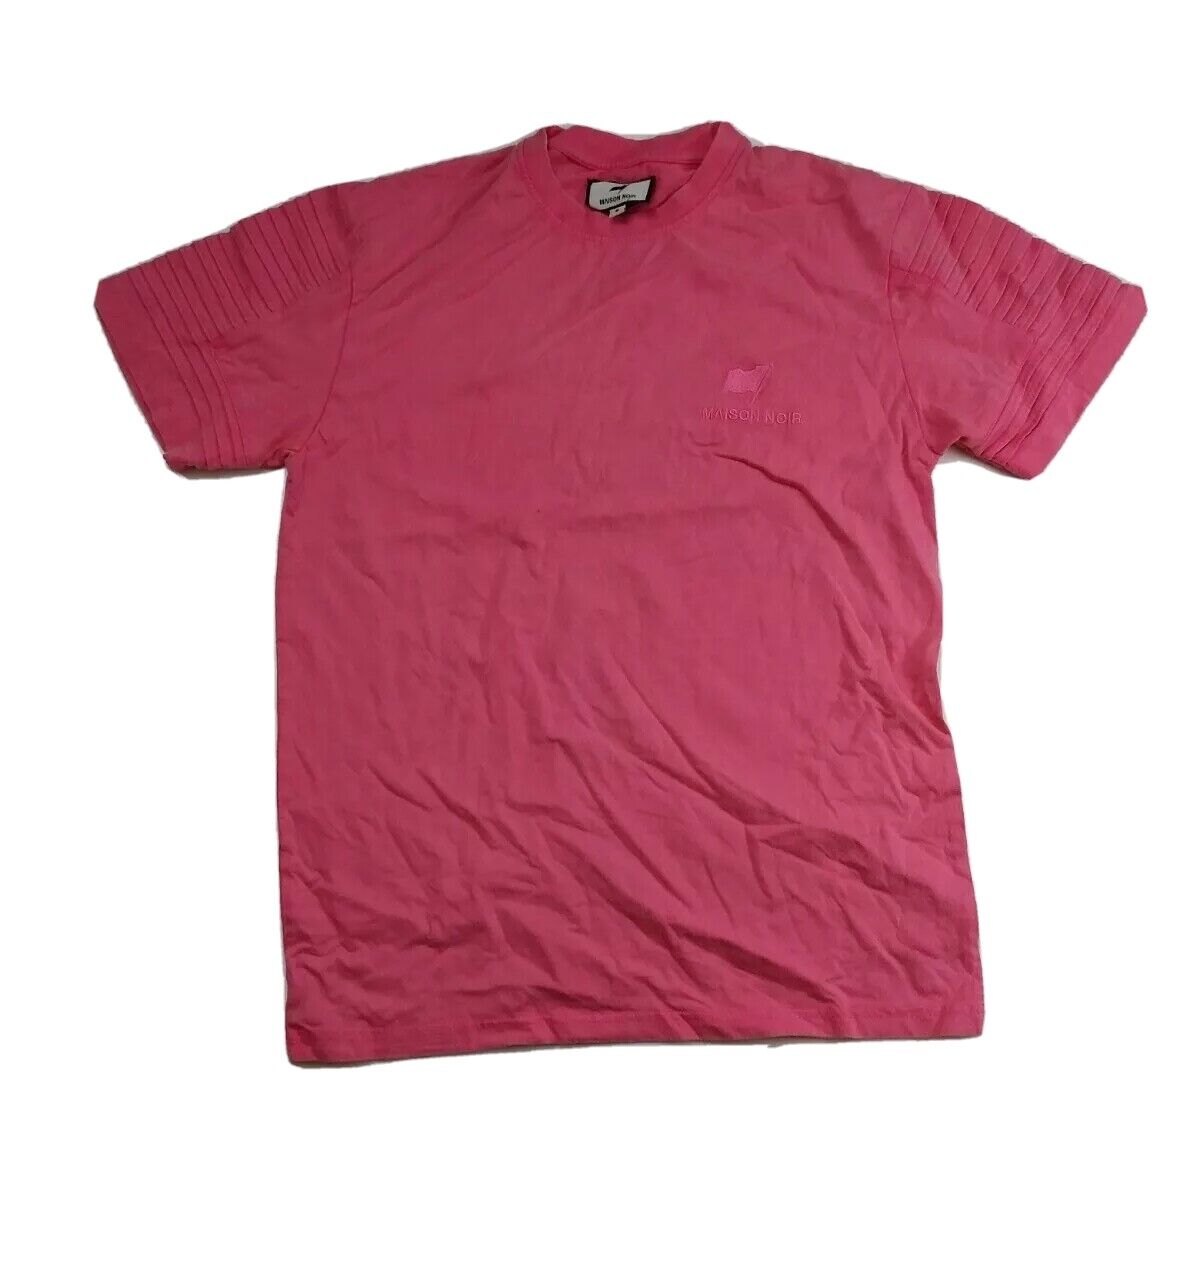 Maison noir mens 100% authentic S/S t-shirt size Medium Floral pink logo